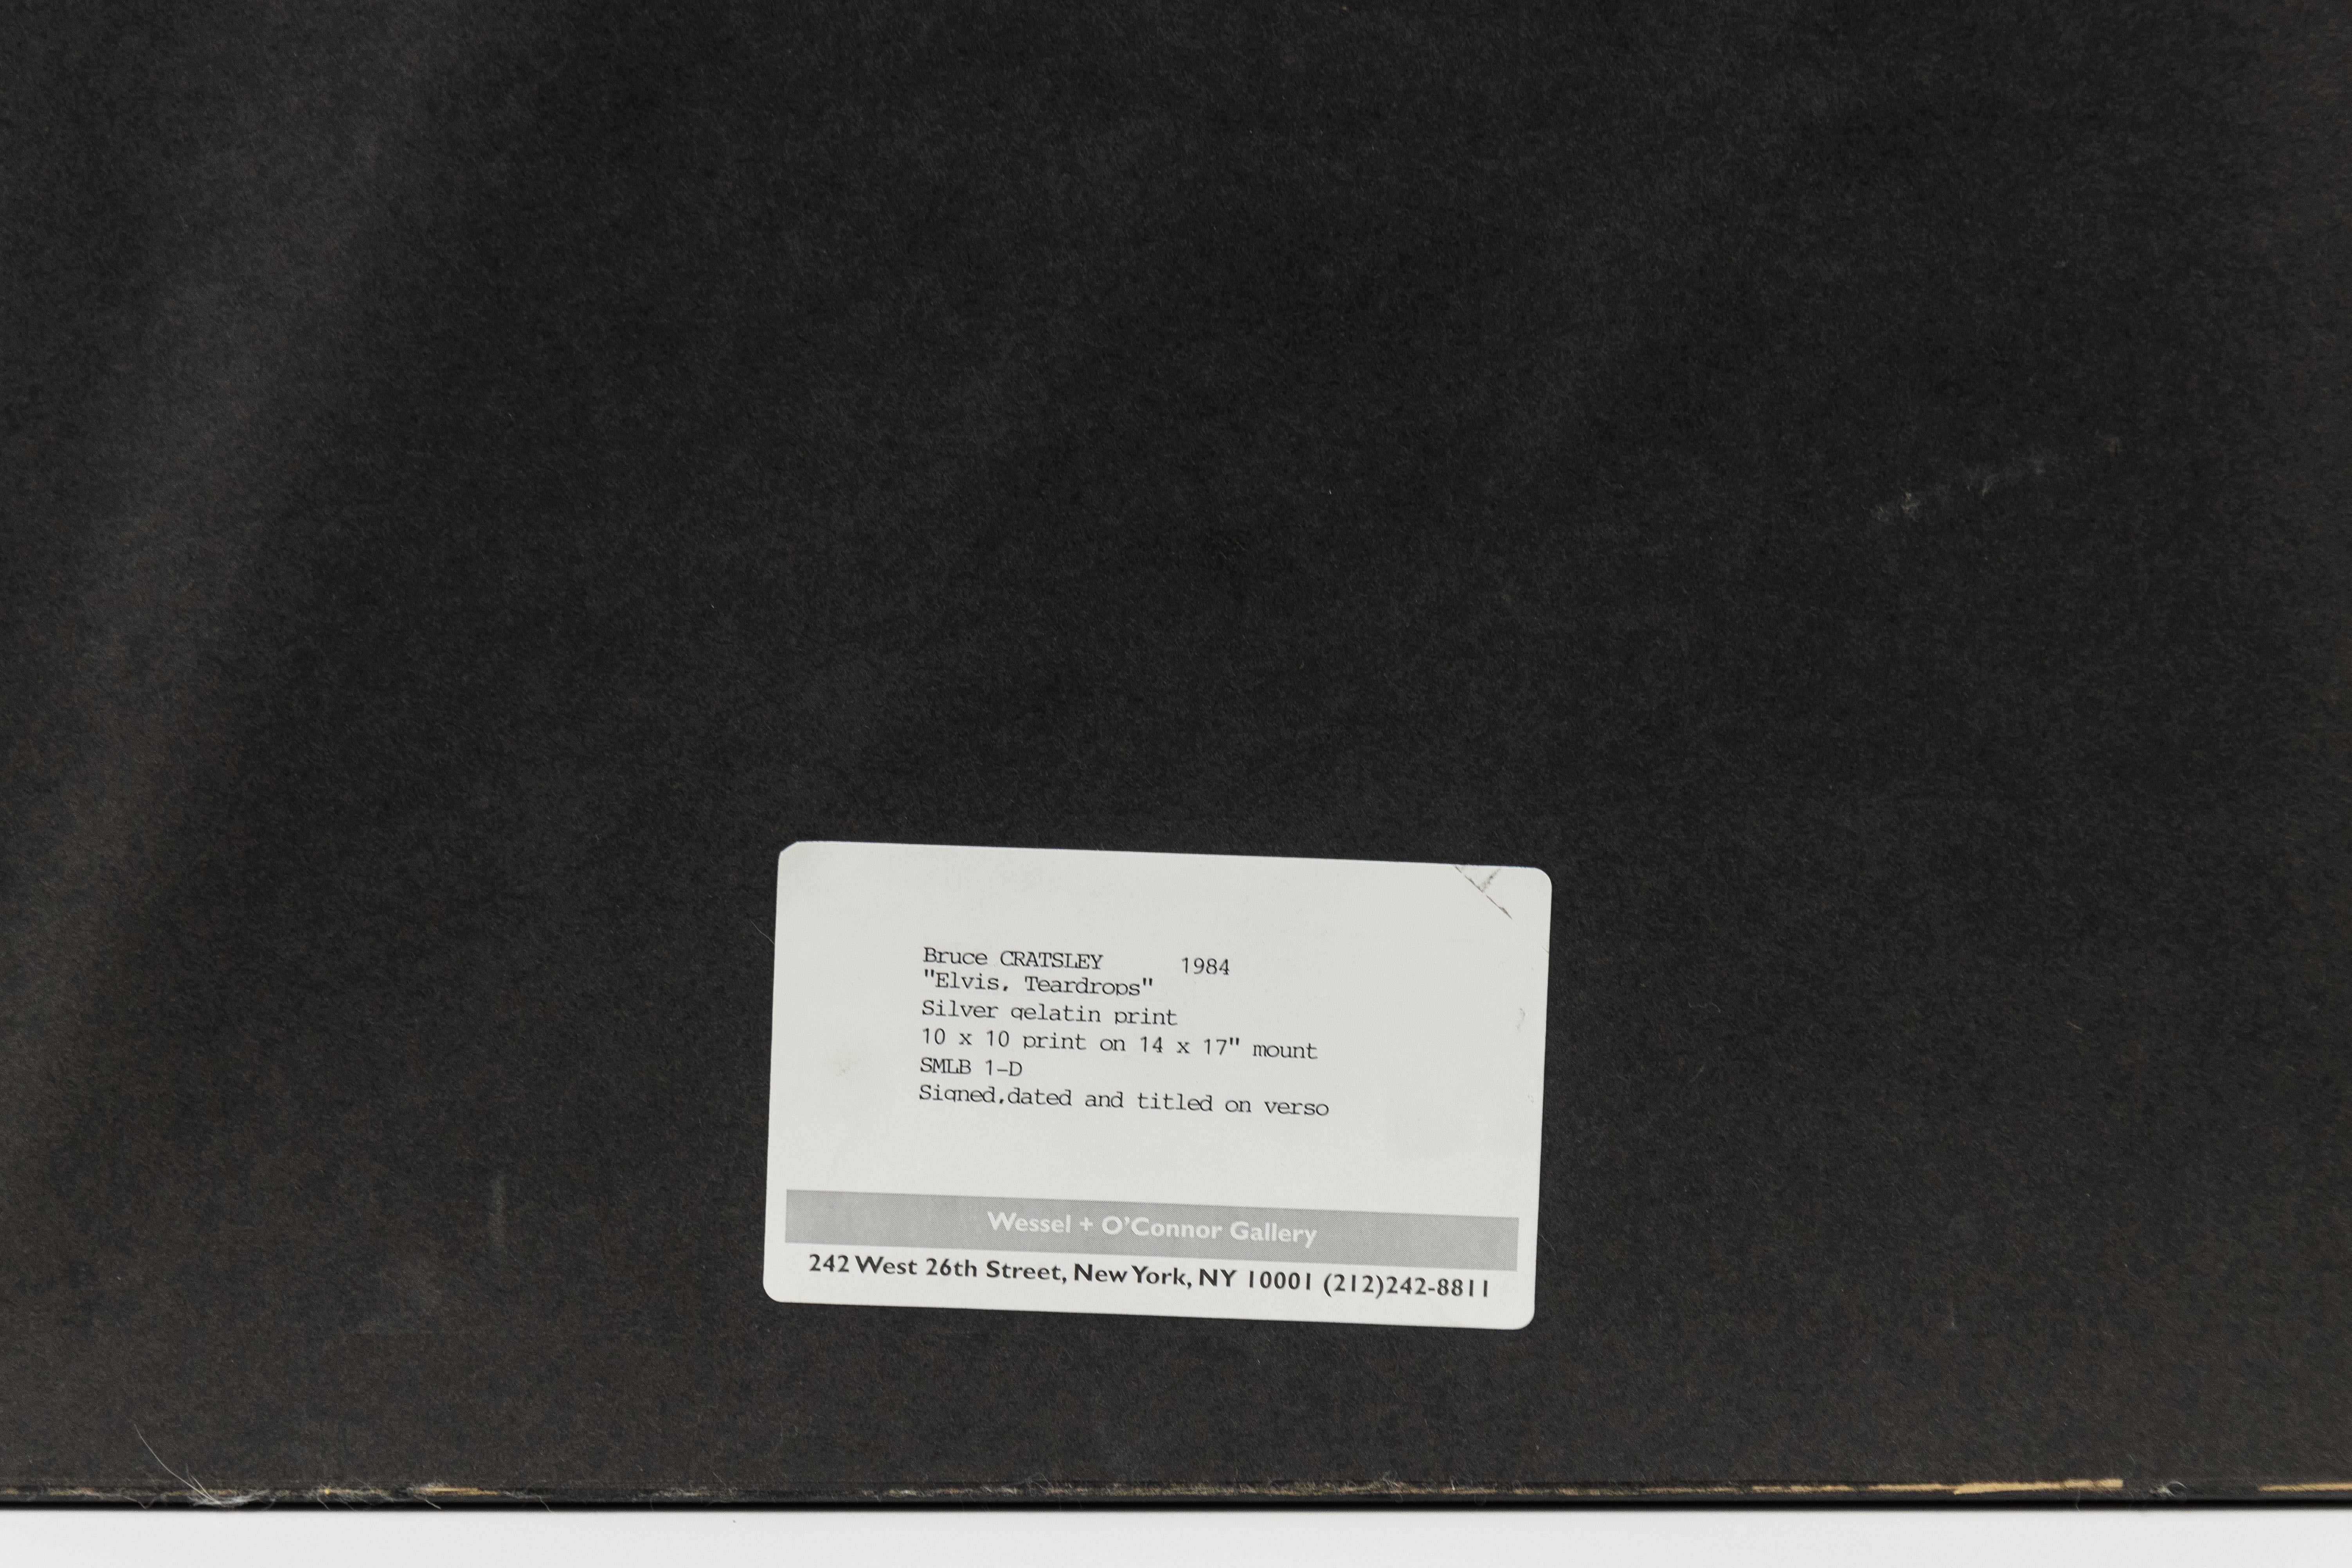 Dies ist eine Schwarz-Weiß-Fotografie von Elvis Presley von Bruce Cratsley, die von CLAMP in New York City angeboten wird.

Elvis Teardrops
1984

Gelatinesilberdruck

17 x 14 Zoll (43,2 x 35,6 cm), Blatt
10 x 10 Zoll (25,4 x 25,4 cm), Bild

$2,815